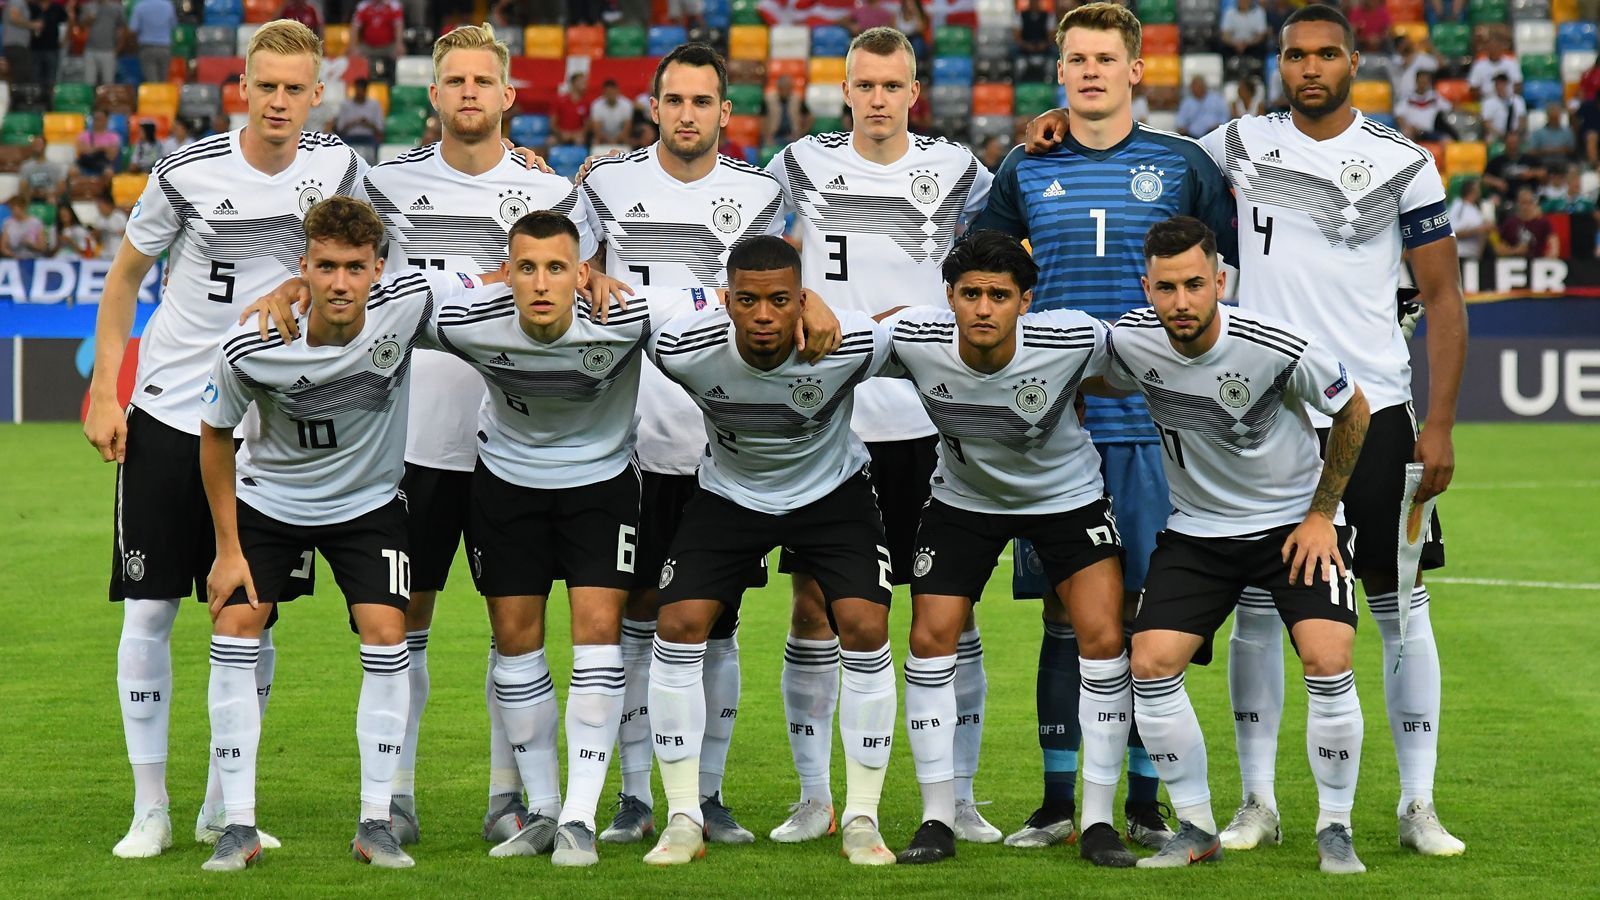 
                <strong>U21-EM: Das deutsche Team gegen Dänemark in der Einzelkritik</strong><br>
                Die ersten drei Punkte sind im Sack. Mit dem 3:1 über Dänemark feiert die deutsche U21-Auswahl einen erfolgreichen Start in die EM in Italien und San Marino. ran.de präsentiert die Noten zum überzeugenden Auftakt.
              